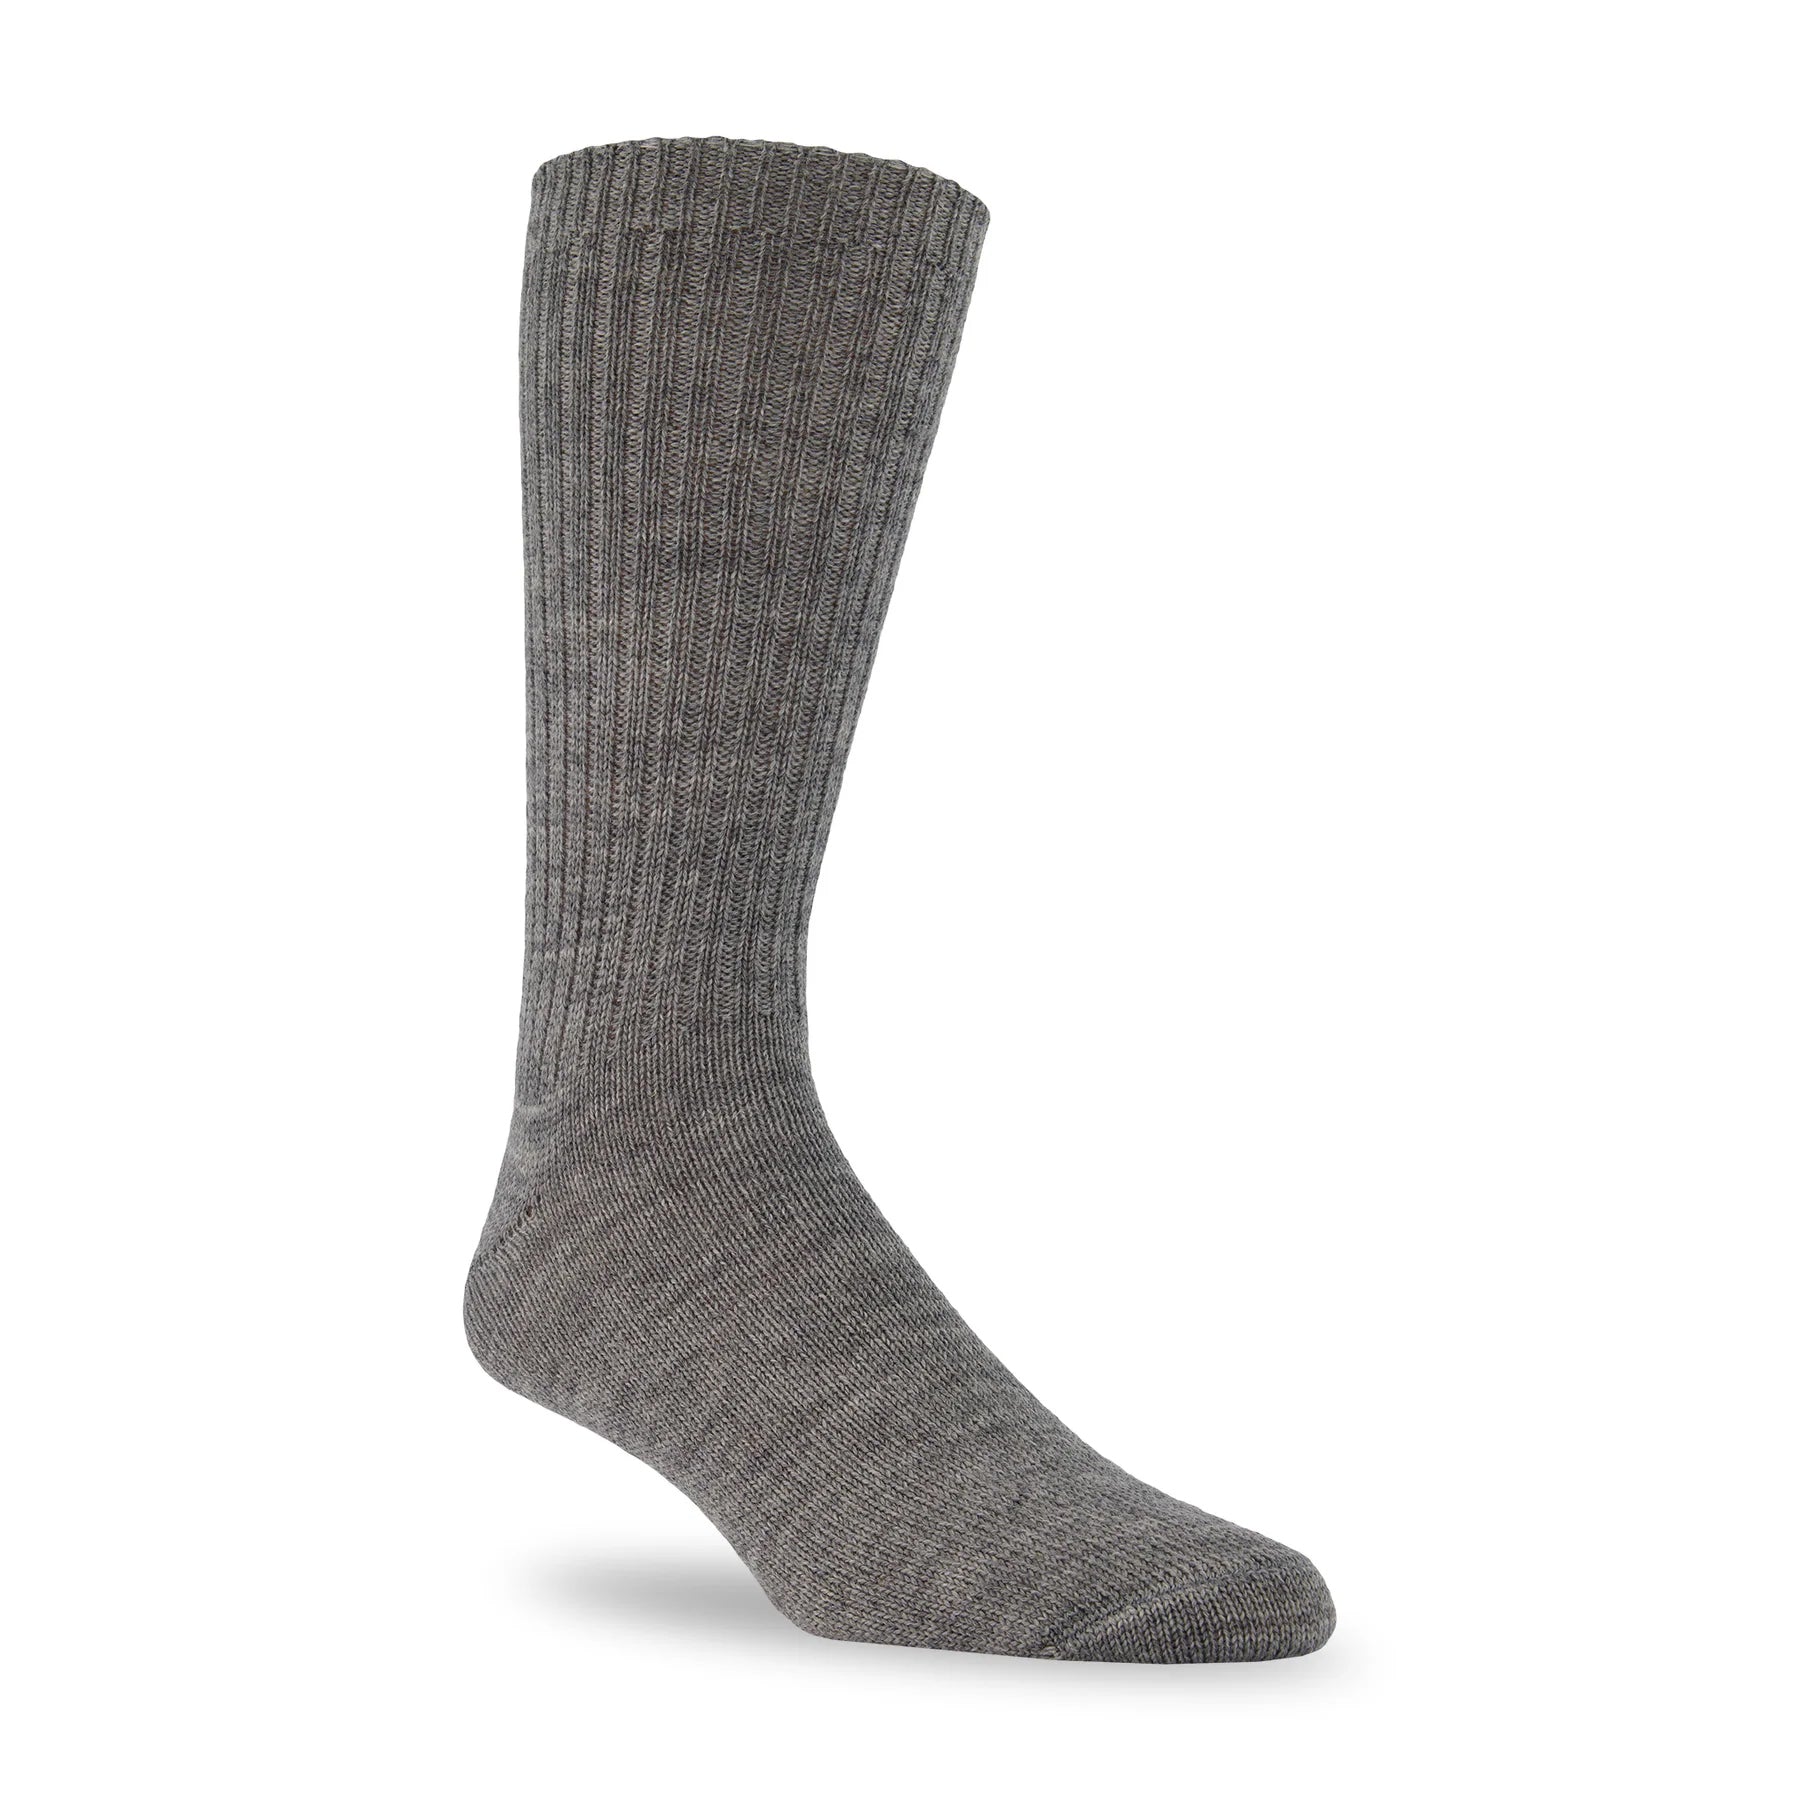 J.B. Field's Naturals Casual Weekender Wool Sock